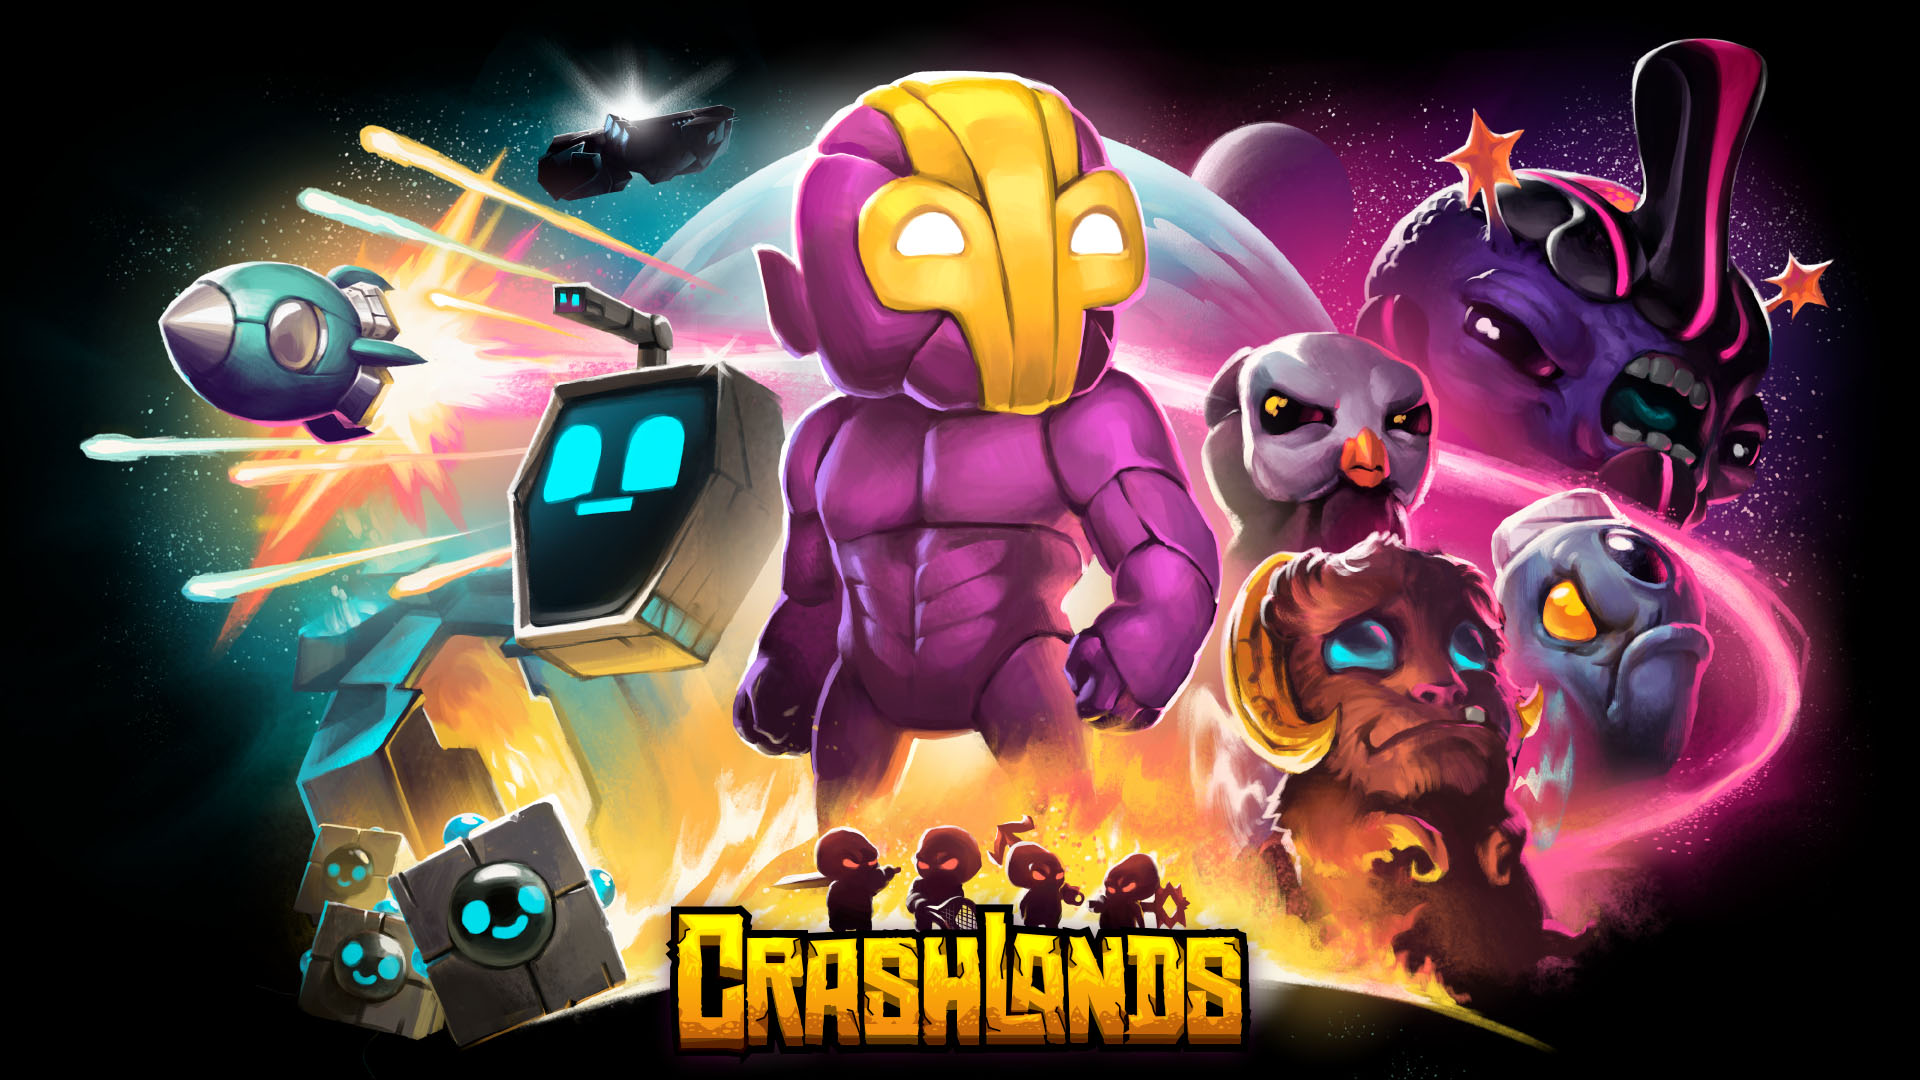 Video Game Crashlands HD Wallpaper | Background Image